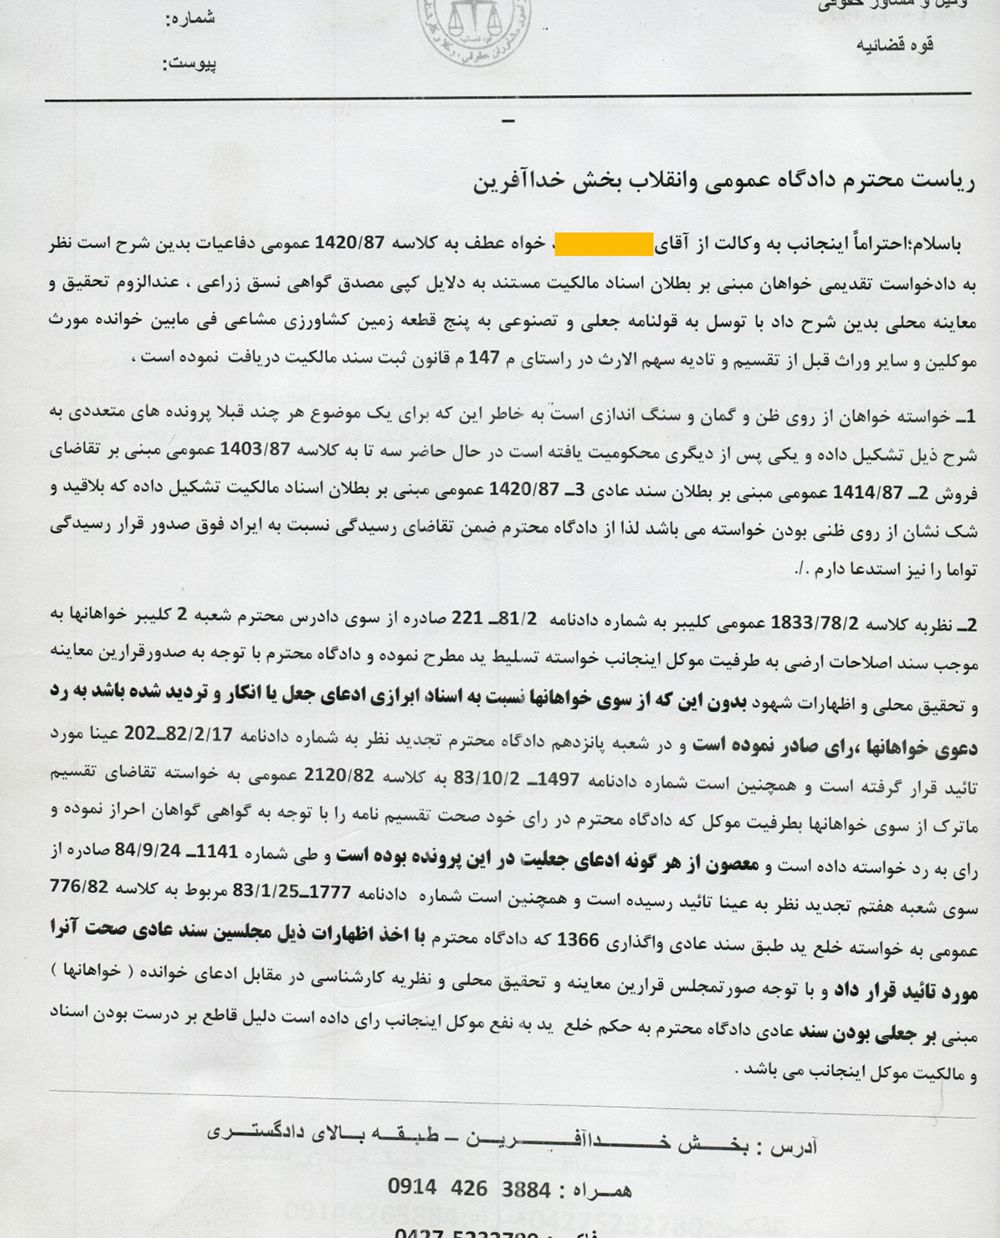 نمونه لایحه در خصوص قولنامه جعلی یا تصنوعی با وکالت علیرضا پورمحمد 